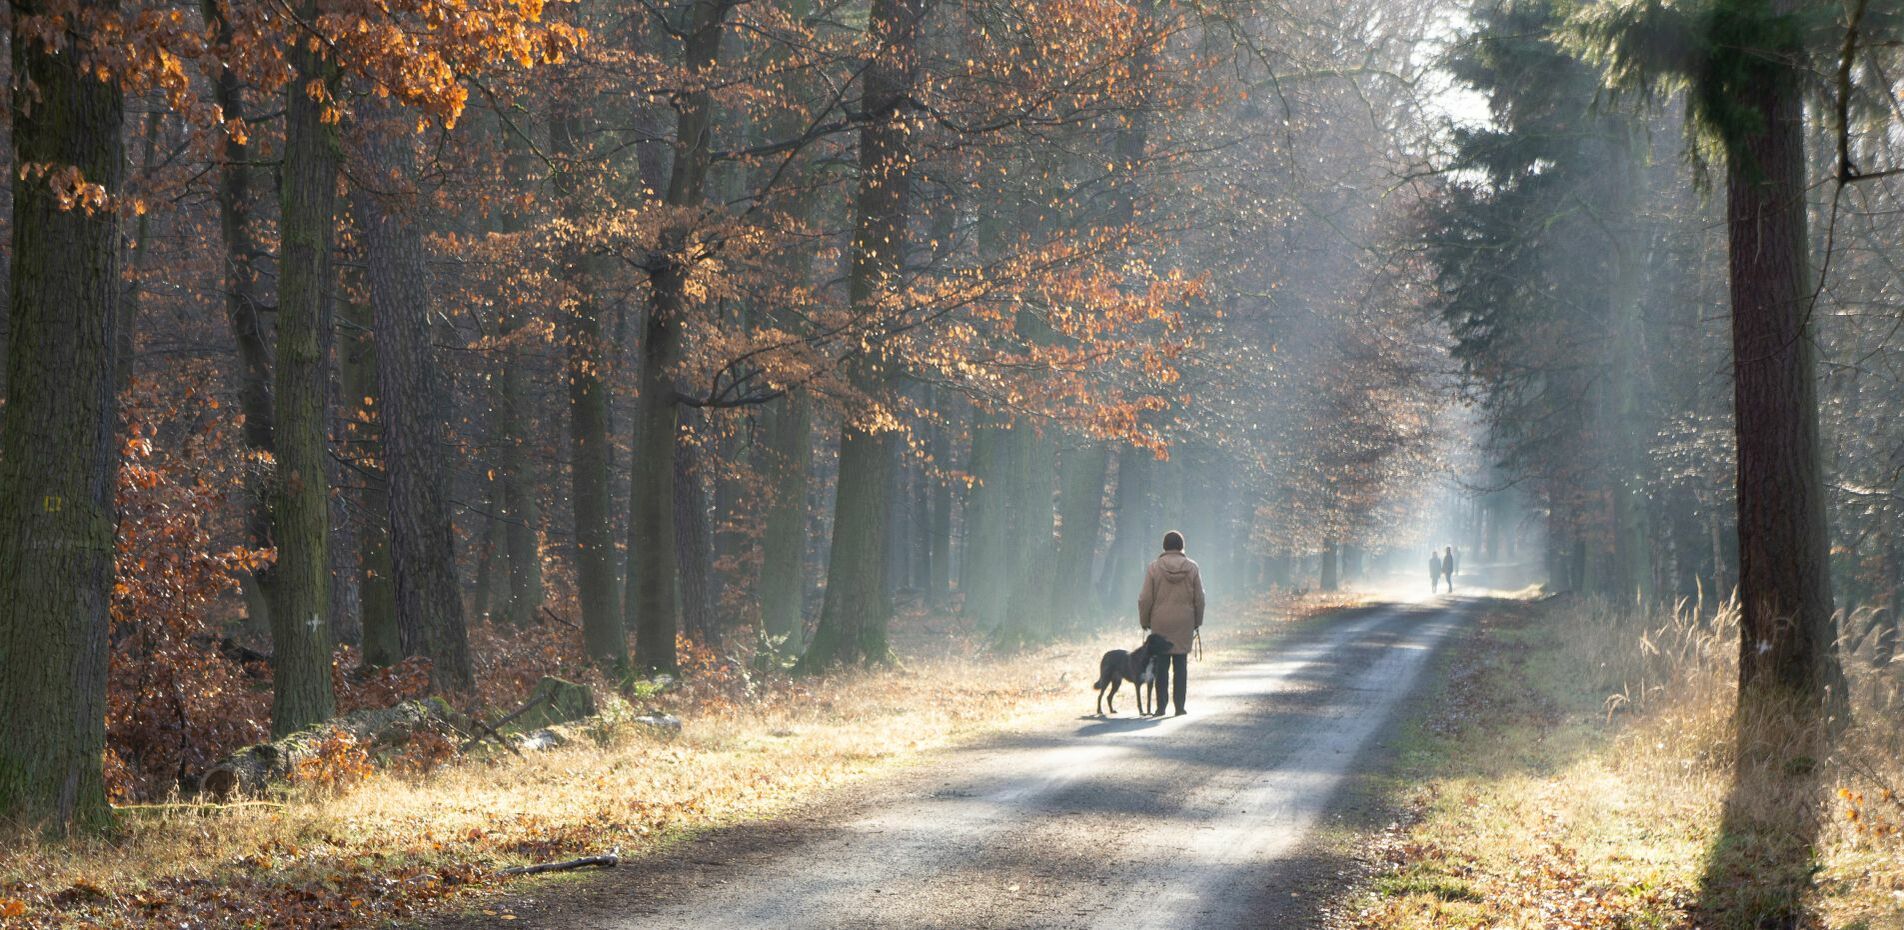 Ein Spaziergänger mit seinem Hund im Wald ist aus der Ferne zu erkennen.